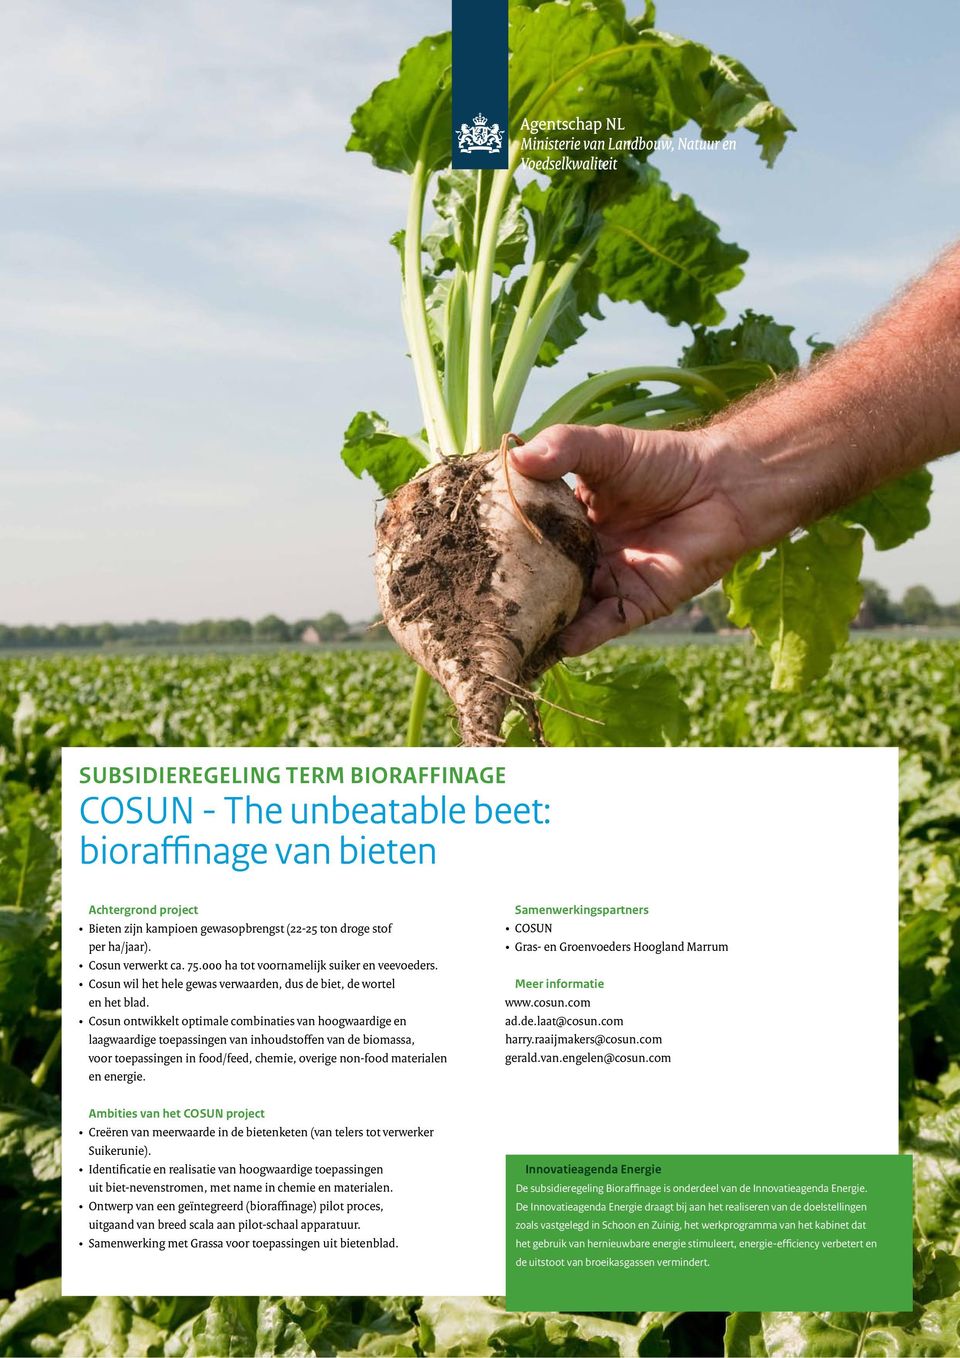 Cosun ontwikkelt optimale combinaties van hoogwaardige en laagwaardige toepassingen van inhoudstoffen van de biomassa, voor toepassingen in food/feed, chemie, overige non-food materialen en energie.